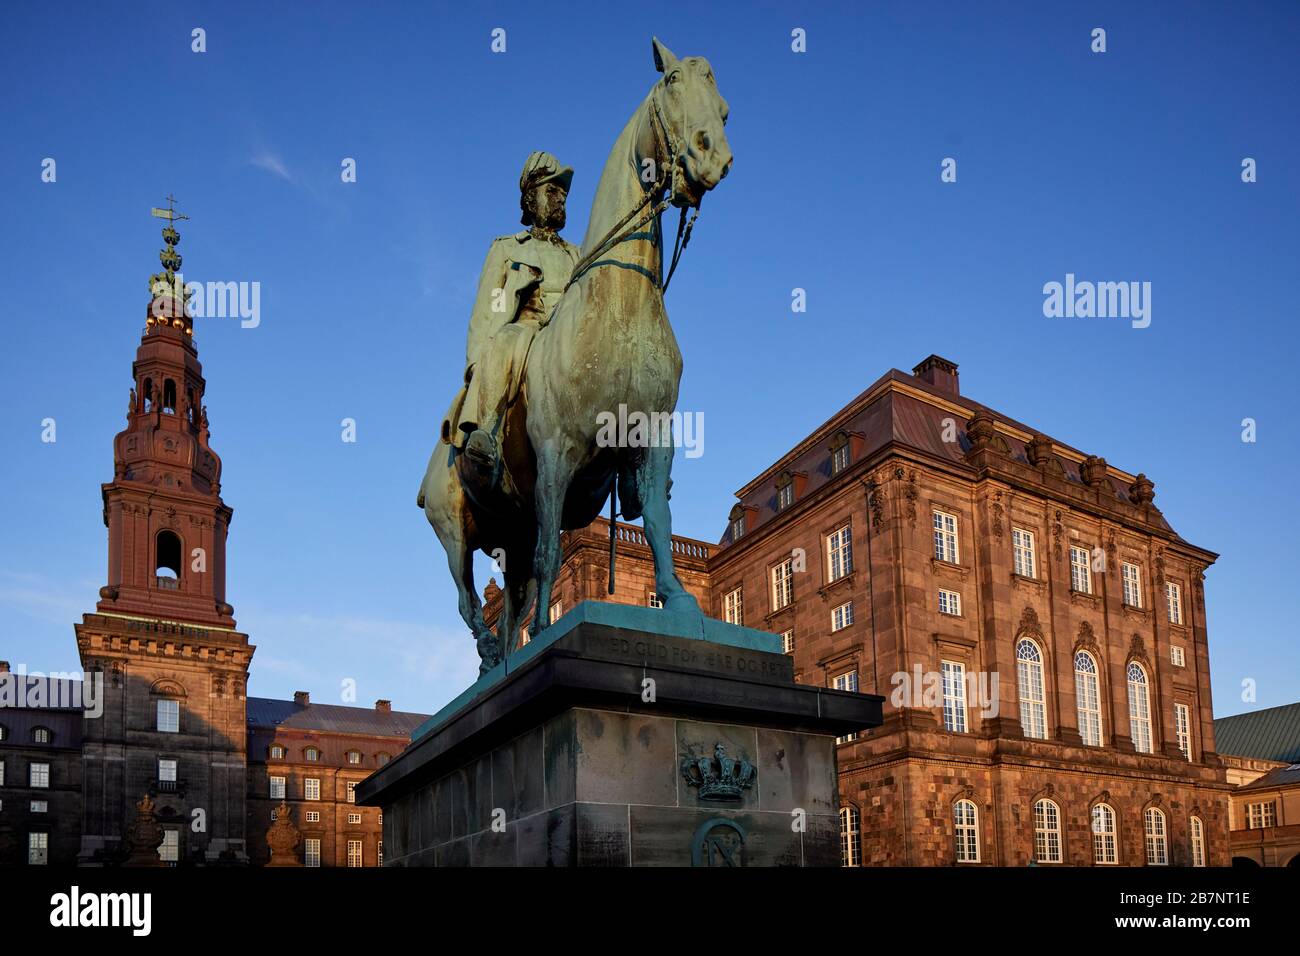 Copenhague, capitale du Danemark, Palais Christiansborg et statue équestre de Christian IX par l'artiste Anne Marie Carl-Nielsen et les gouvernmen de Folketinget Banque D'Images